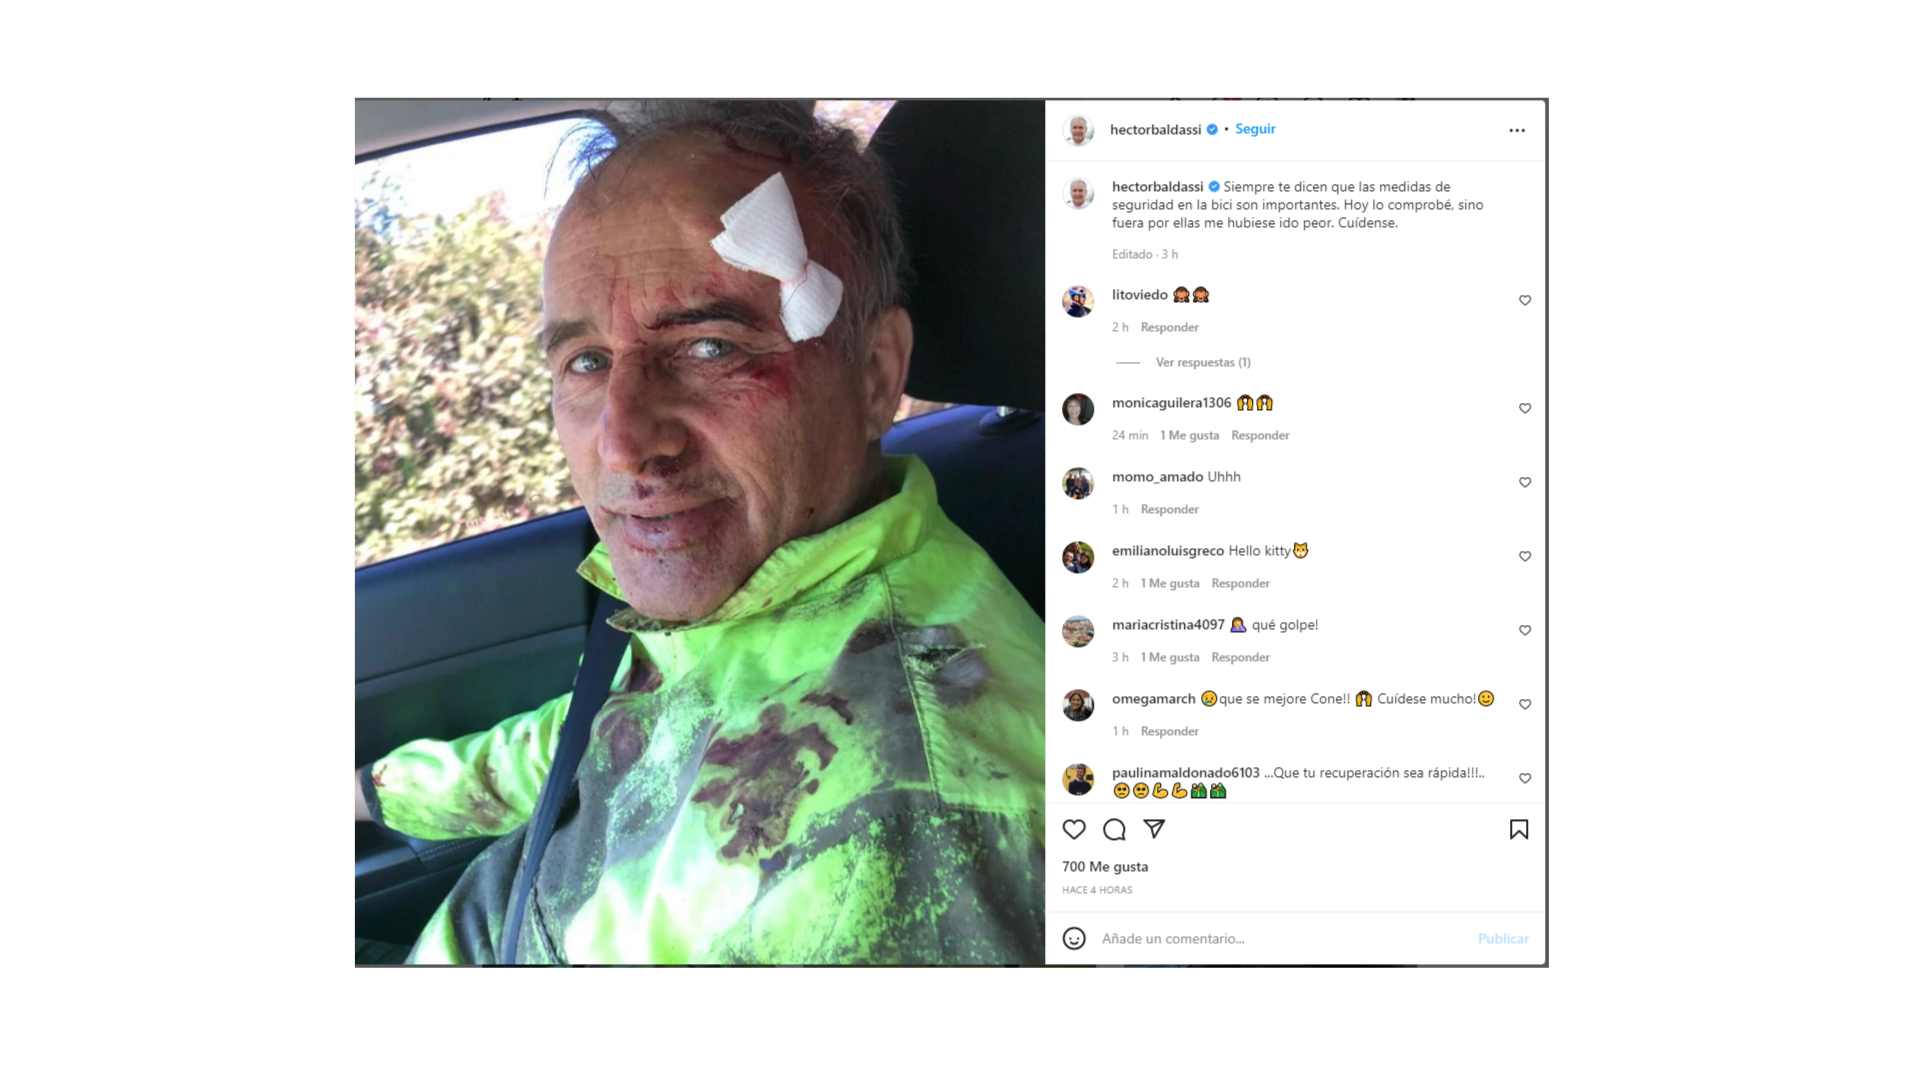 El diputado Héctor Baldassi sufrió un accidente en bicicleta • Canal C